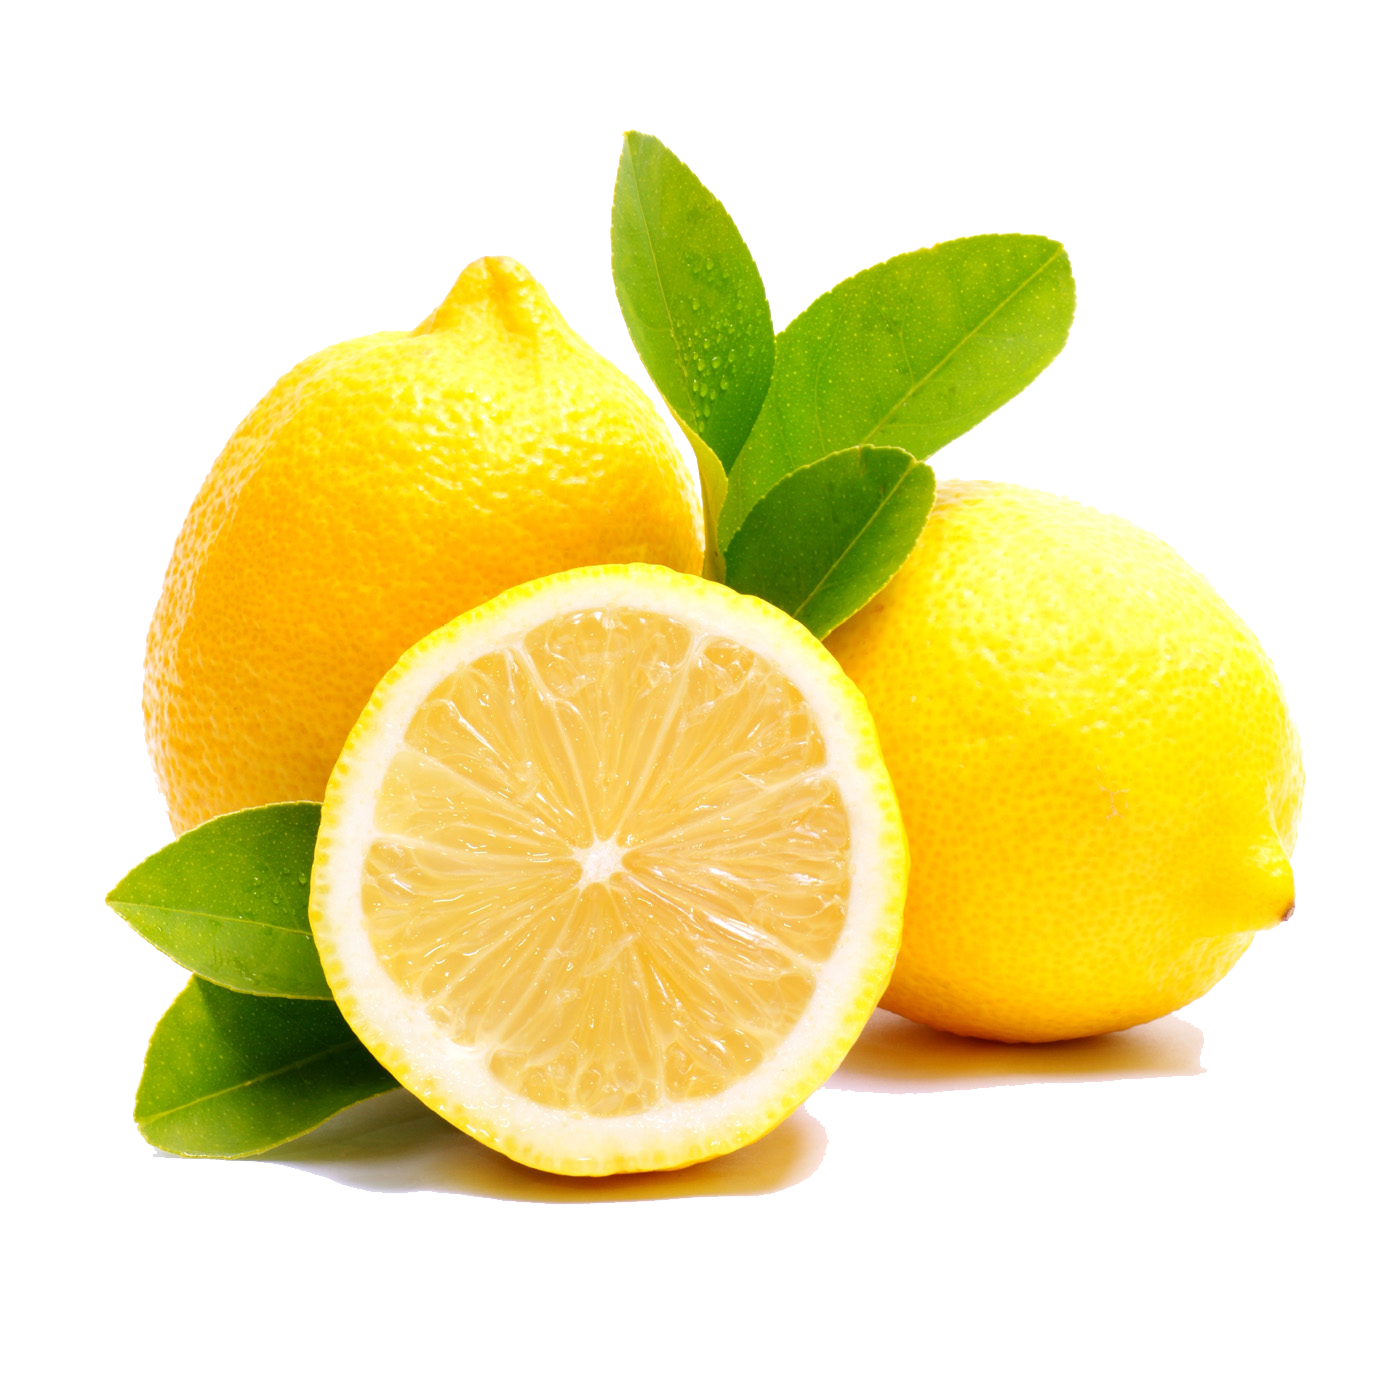 lemons clipart file